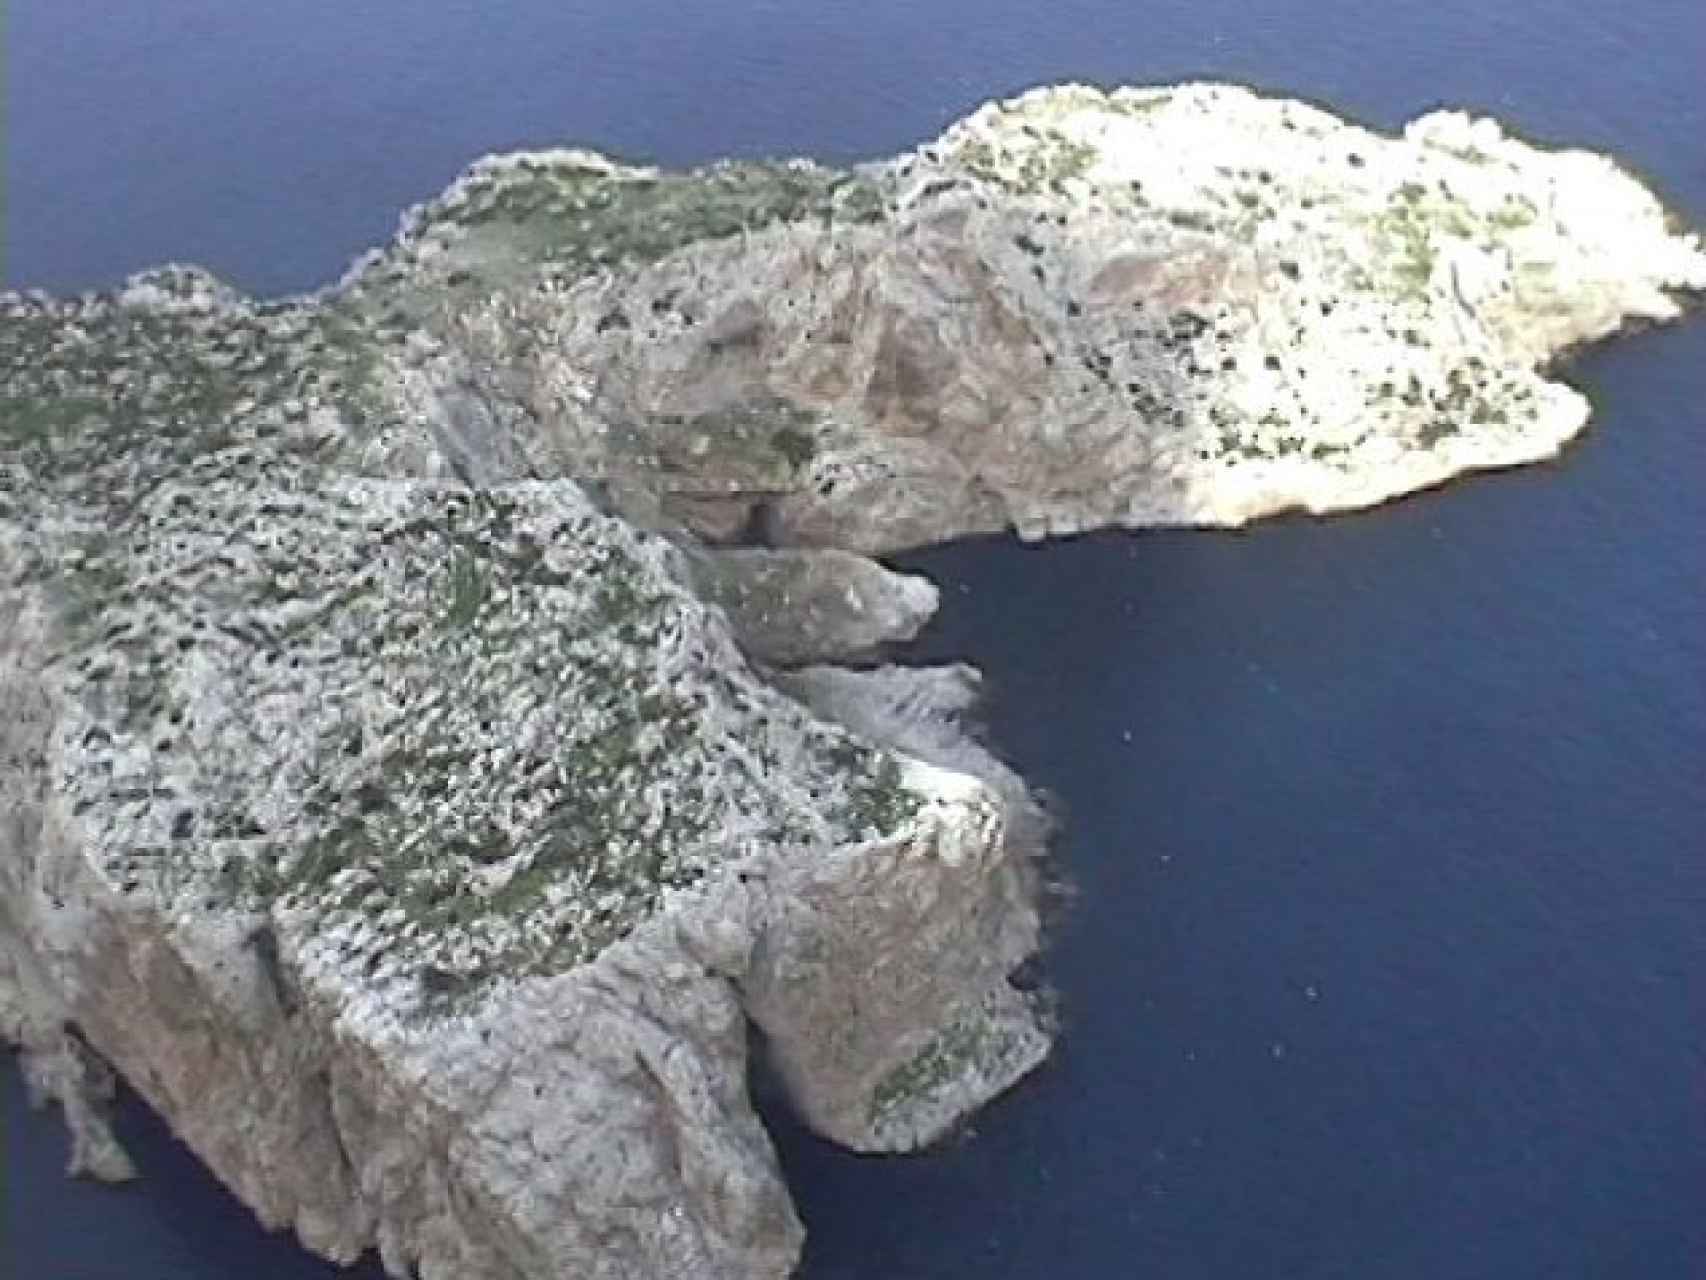 Fotografía del islote desde uno de los helicópteros de la misión. Tomada el 17 de julio de 2002.